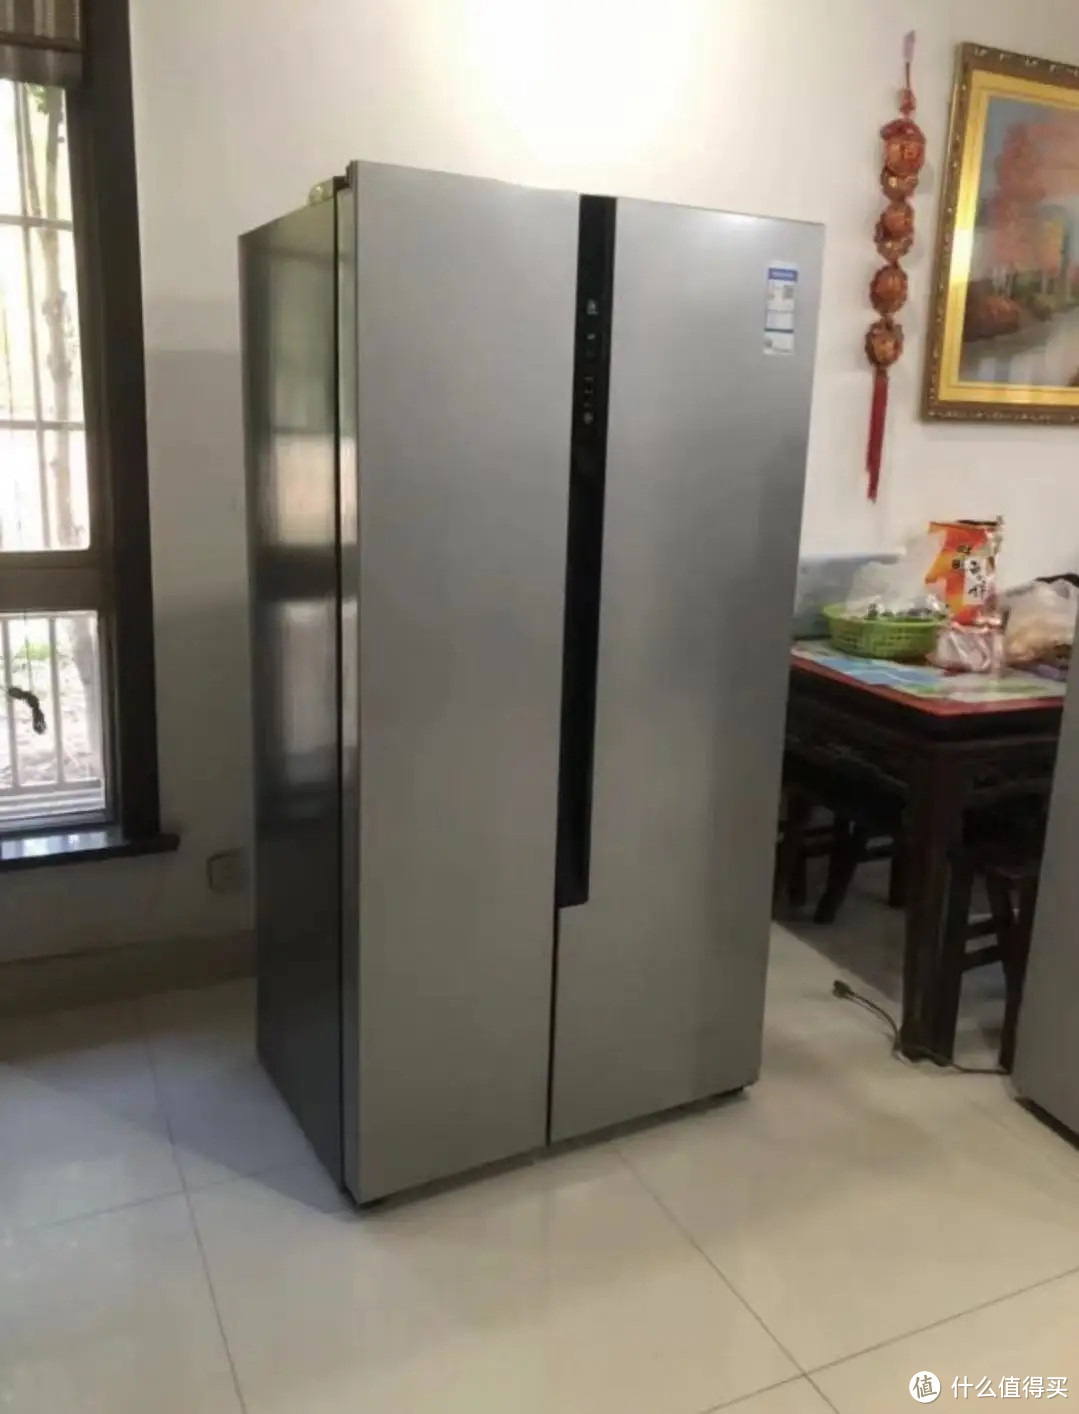 厨房太小要怎么选择冰箱，试试机身纤薄的统帅大容量冰箱